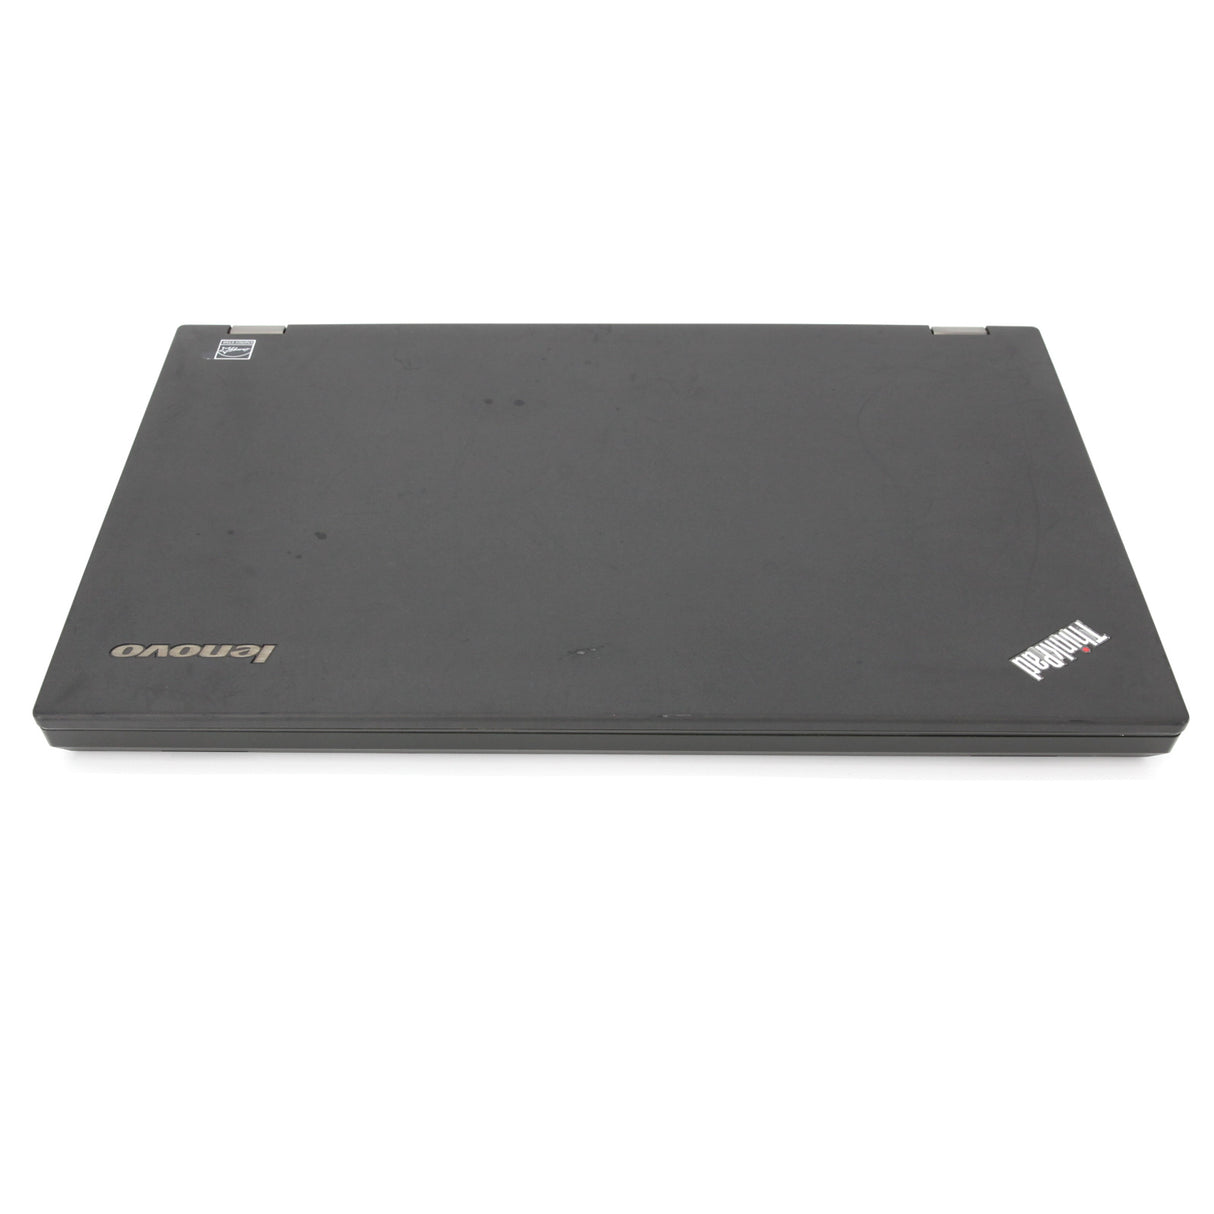 Lenovo ThinkPad T540p Full-HD Laptop: i7-4600M, 8GB RAM, 256GB SSD, Warranty - GreenGreenStoreUK